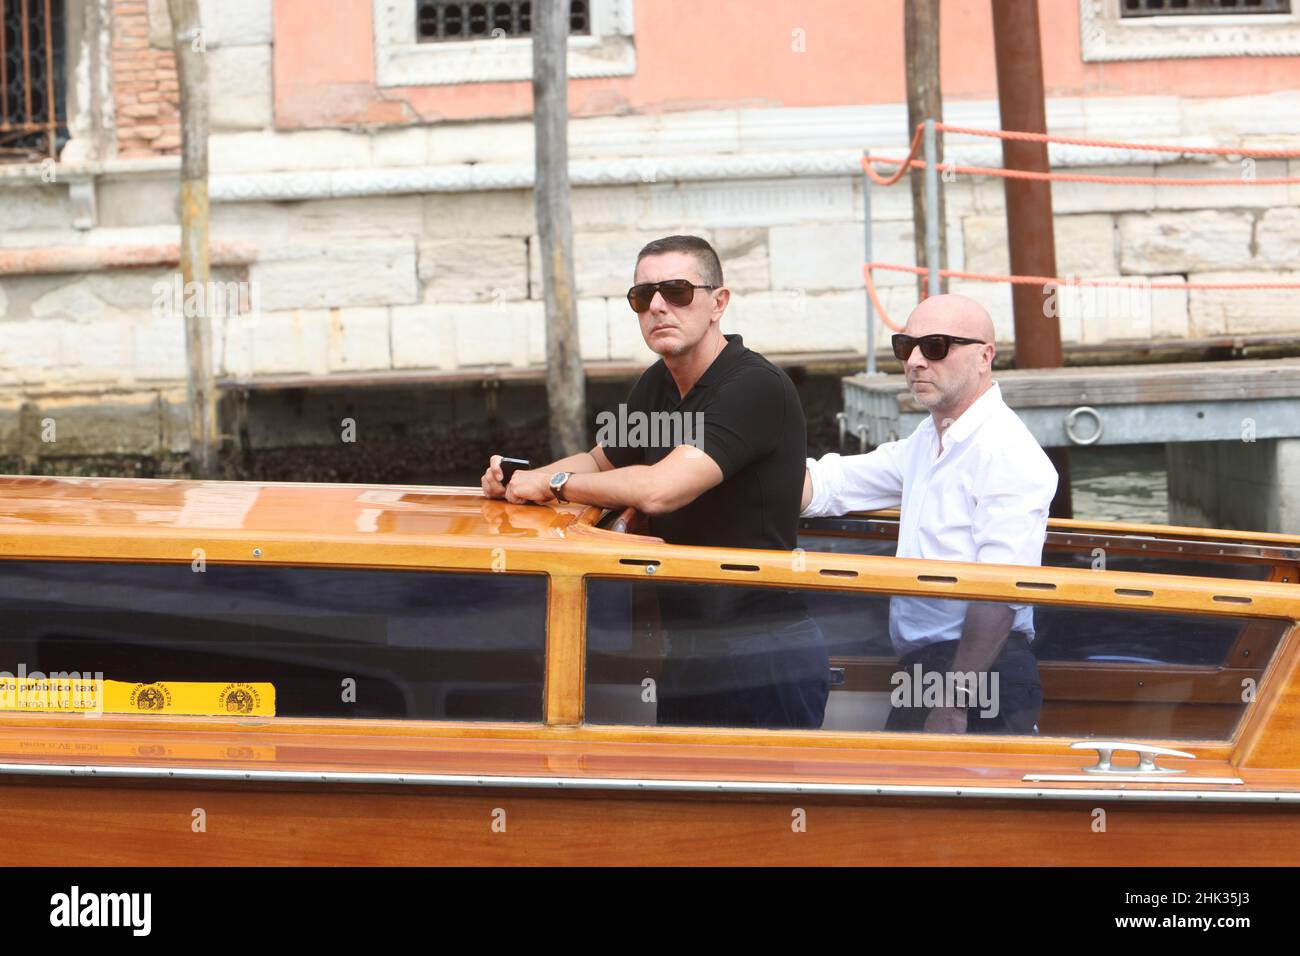 Domenico Dolce et Stefano Gabbana en bateau-taxi à venise Banque D'Images